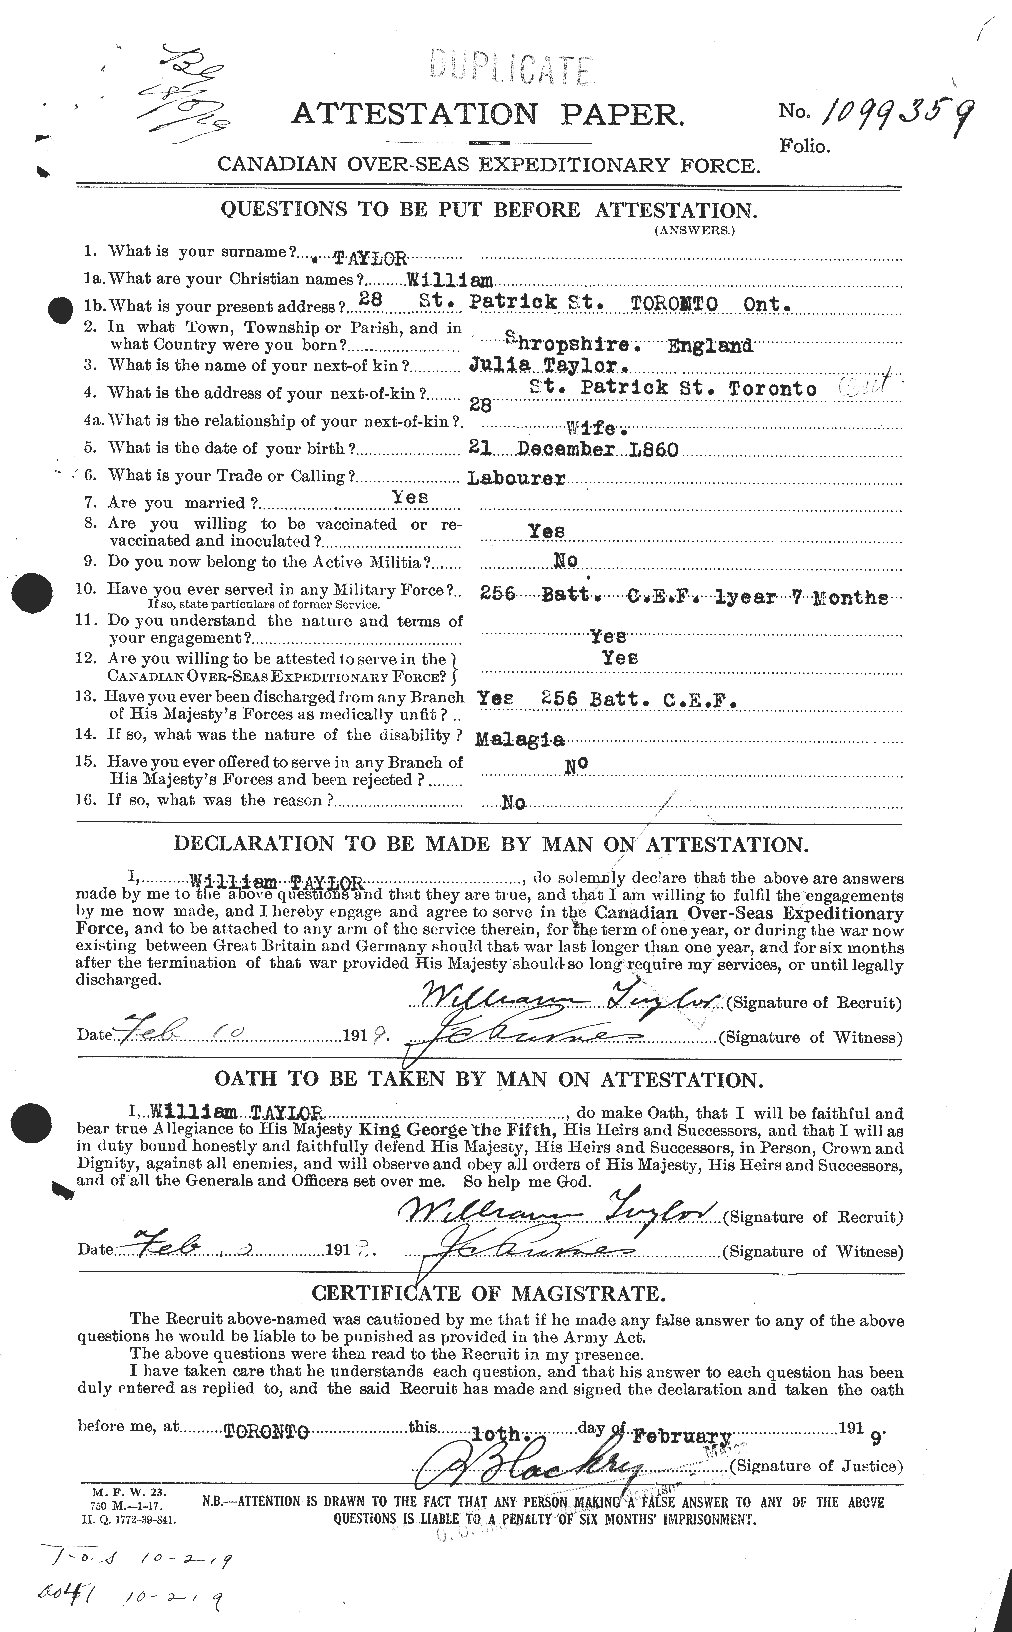 Dossiers du Personnel de la Première Guerre mondiale - CEC 628173a